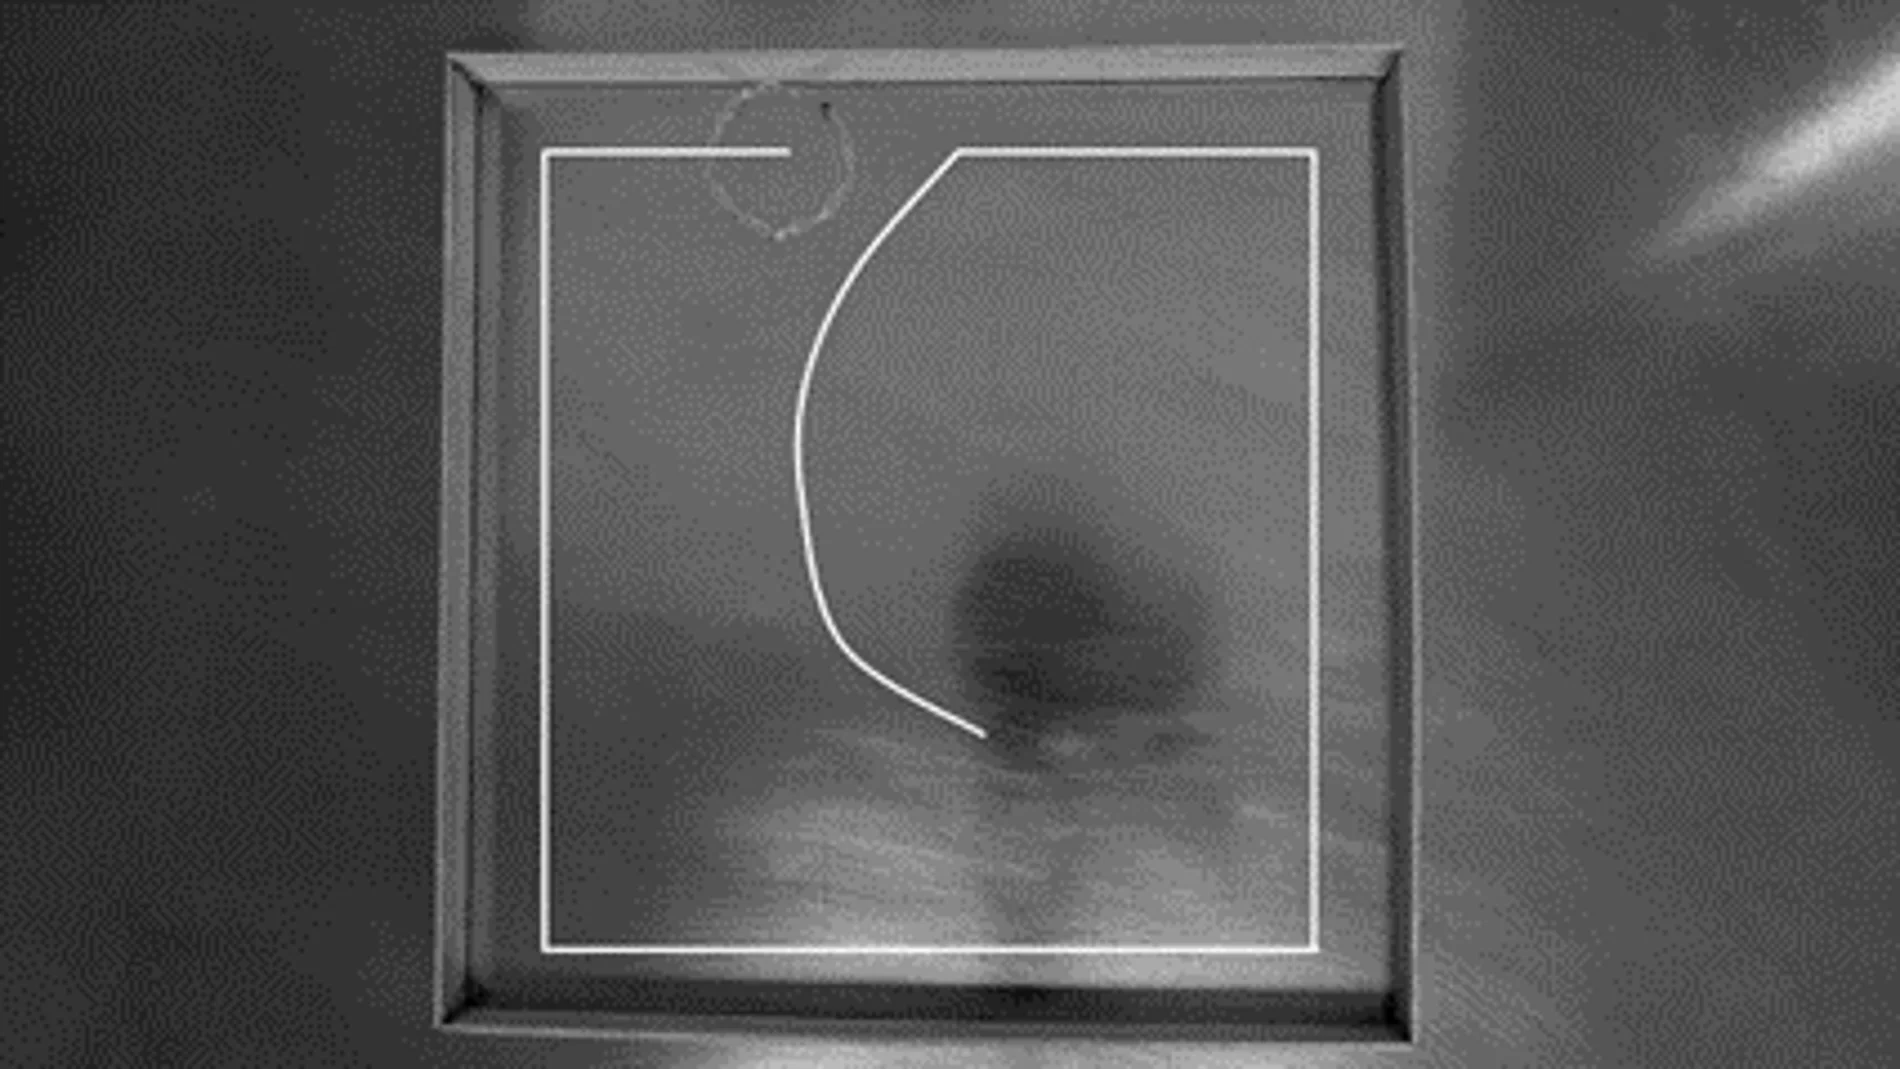 Esta imagen muestra la trayectoria que el robot siguió para cartografiar el límite de un espacio confinado.